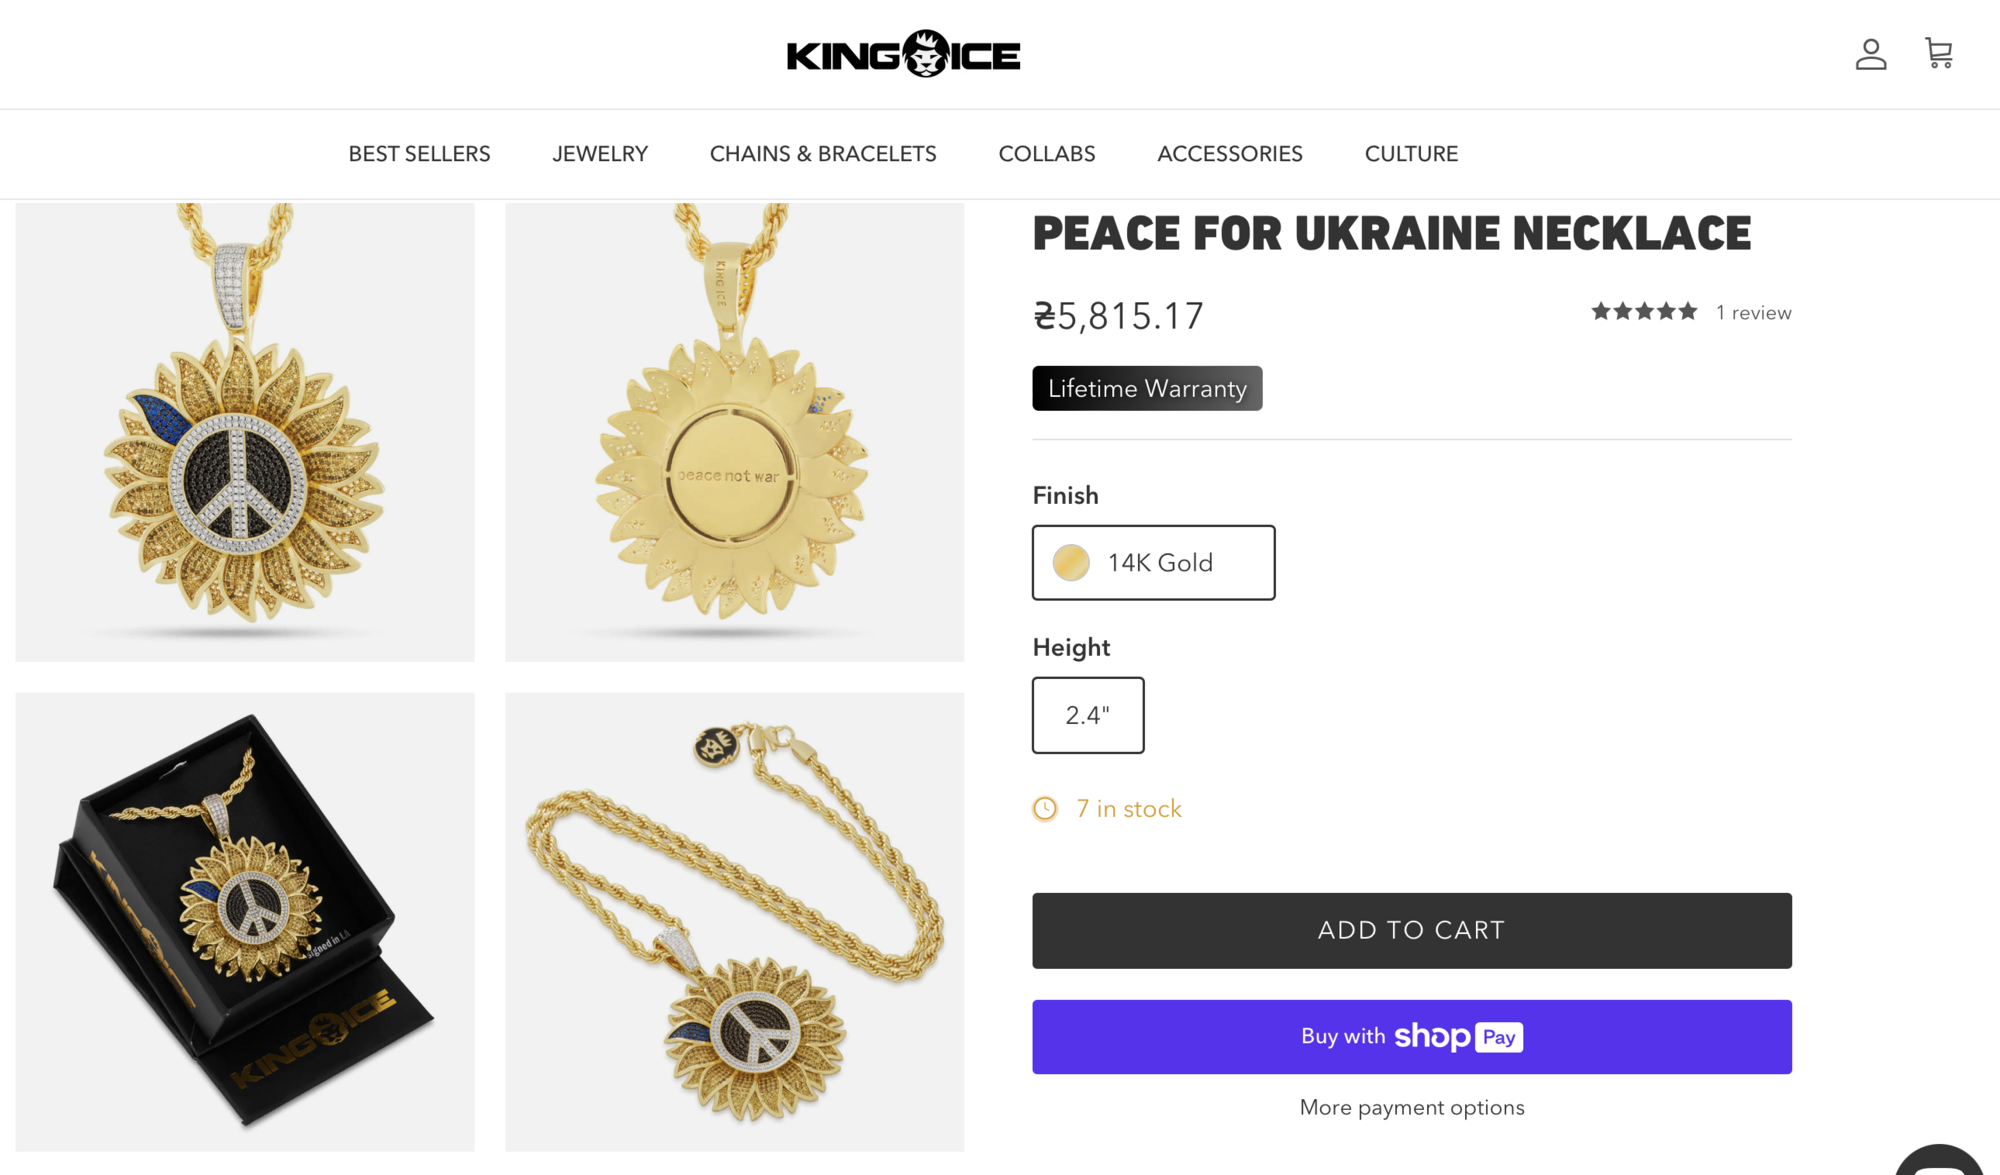 "Наш козак!" Рэпера Snoop Dogg заметили с украшением в поддержку Украины. Фото